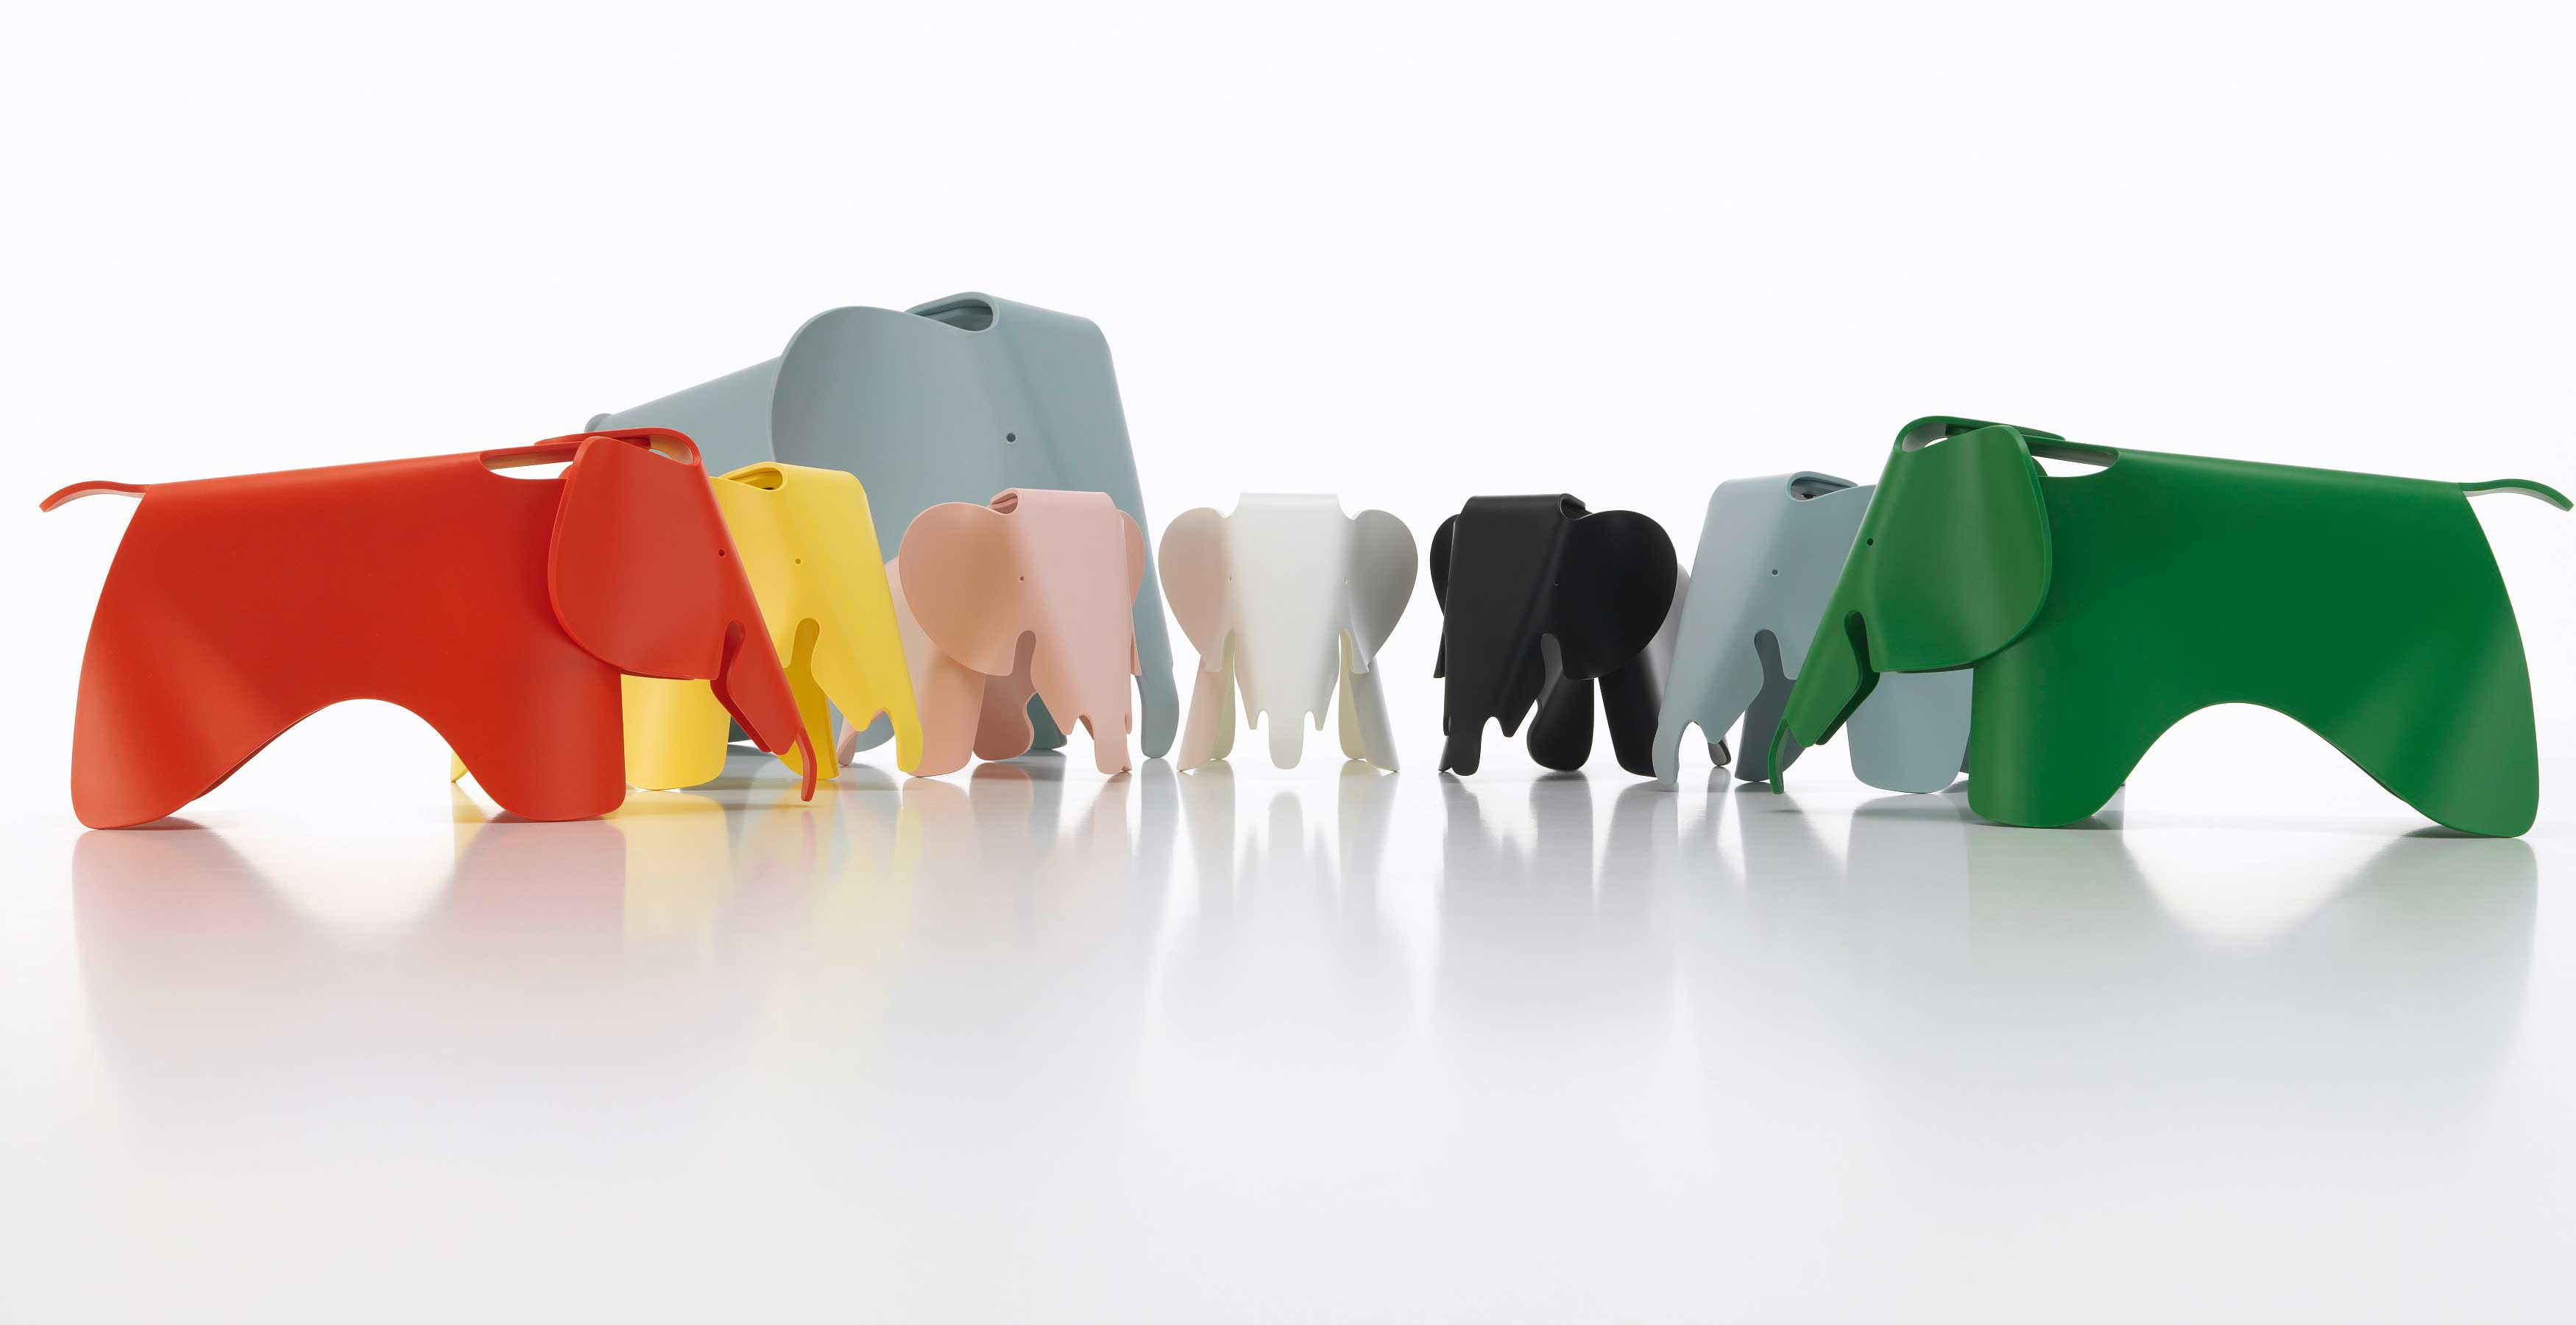 Designobjekt Eames Elephant von Vitra im LHL Onlineshop kaufen. Gruppe in Farben